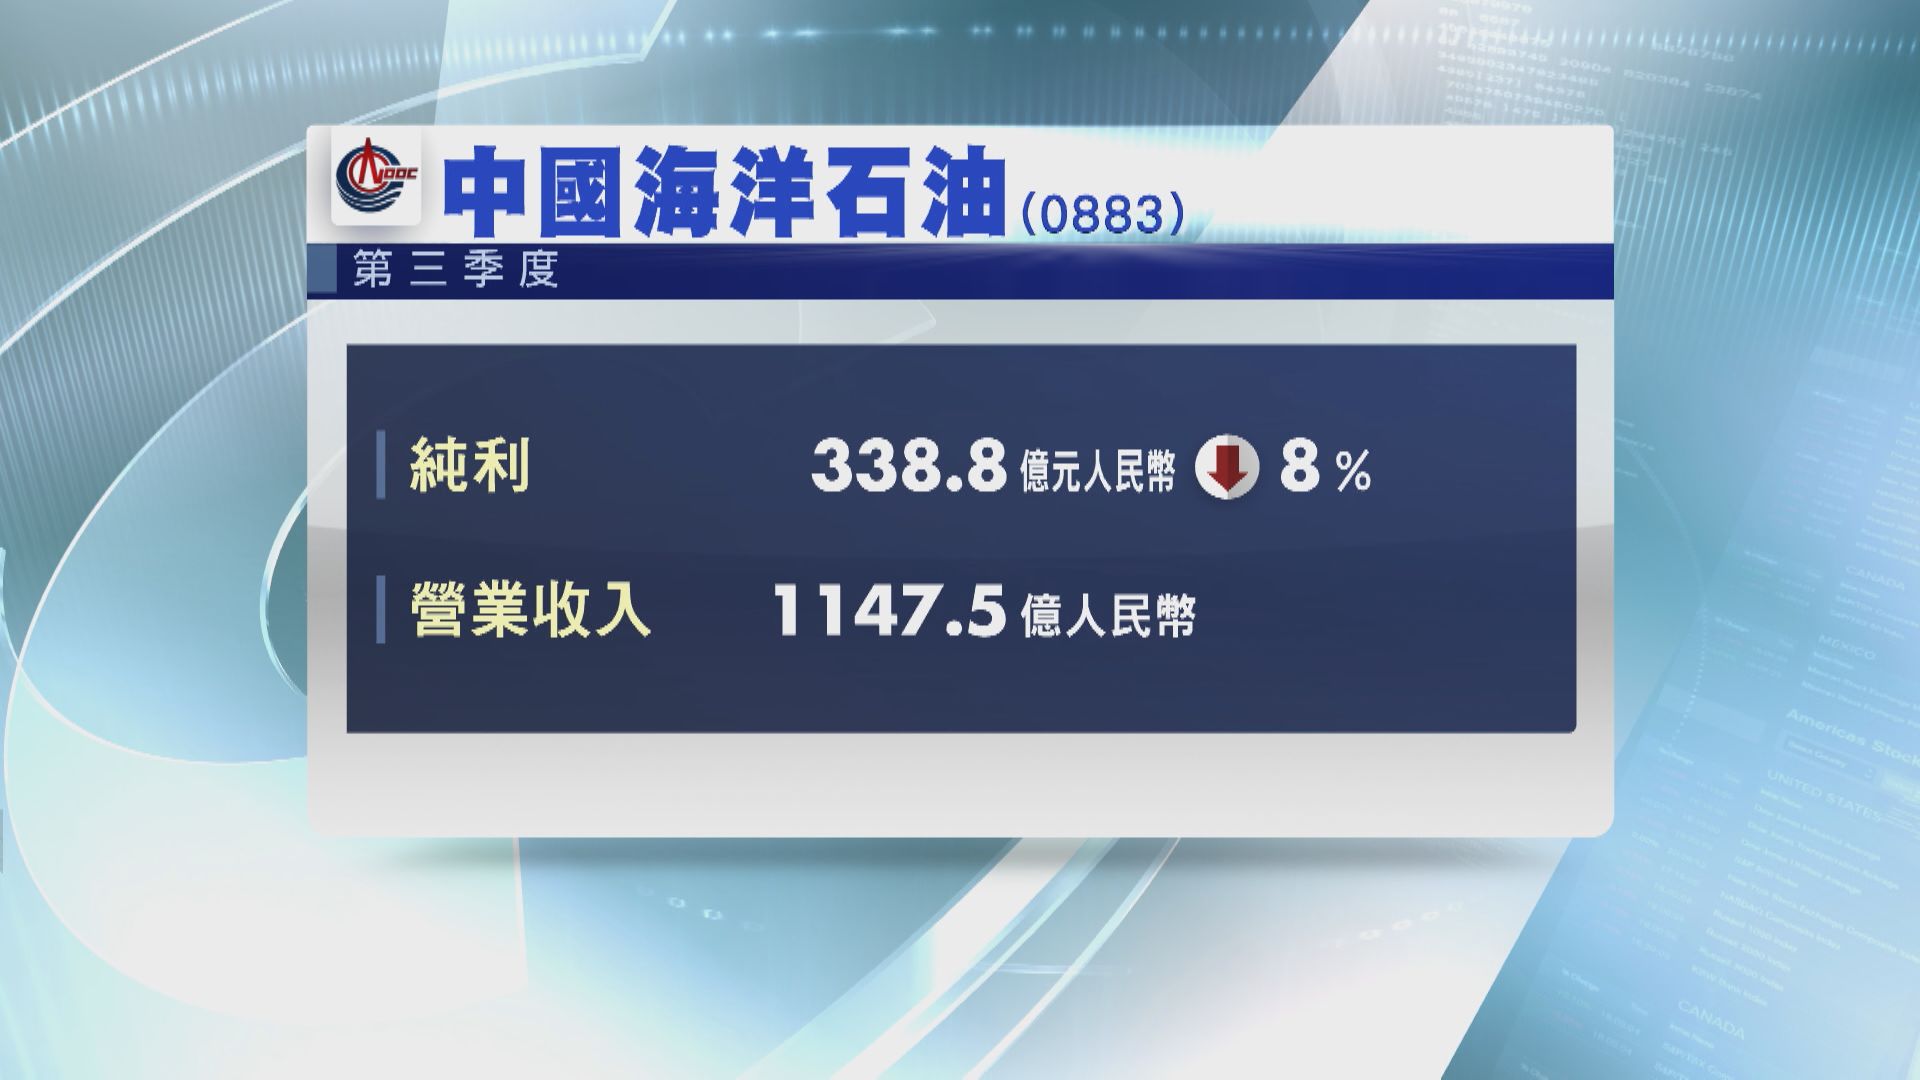 【藍籌業績】中海油上季少賺8%至338.84億人幣